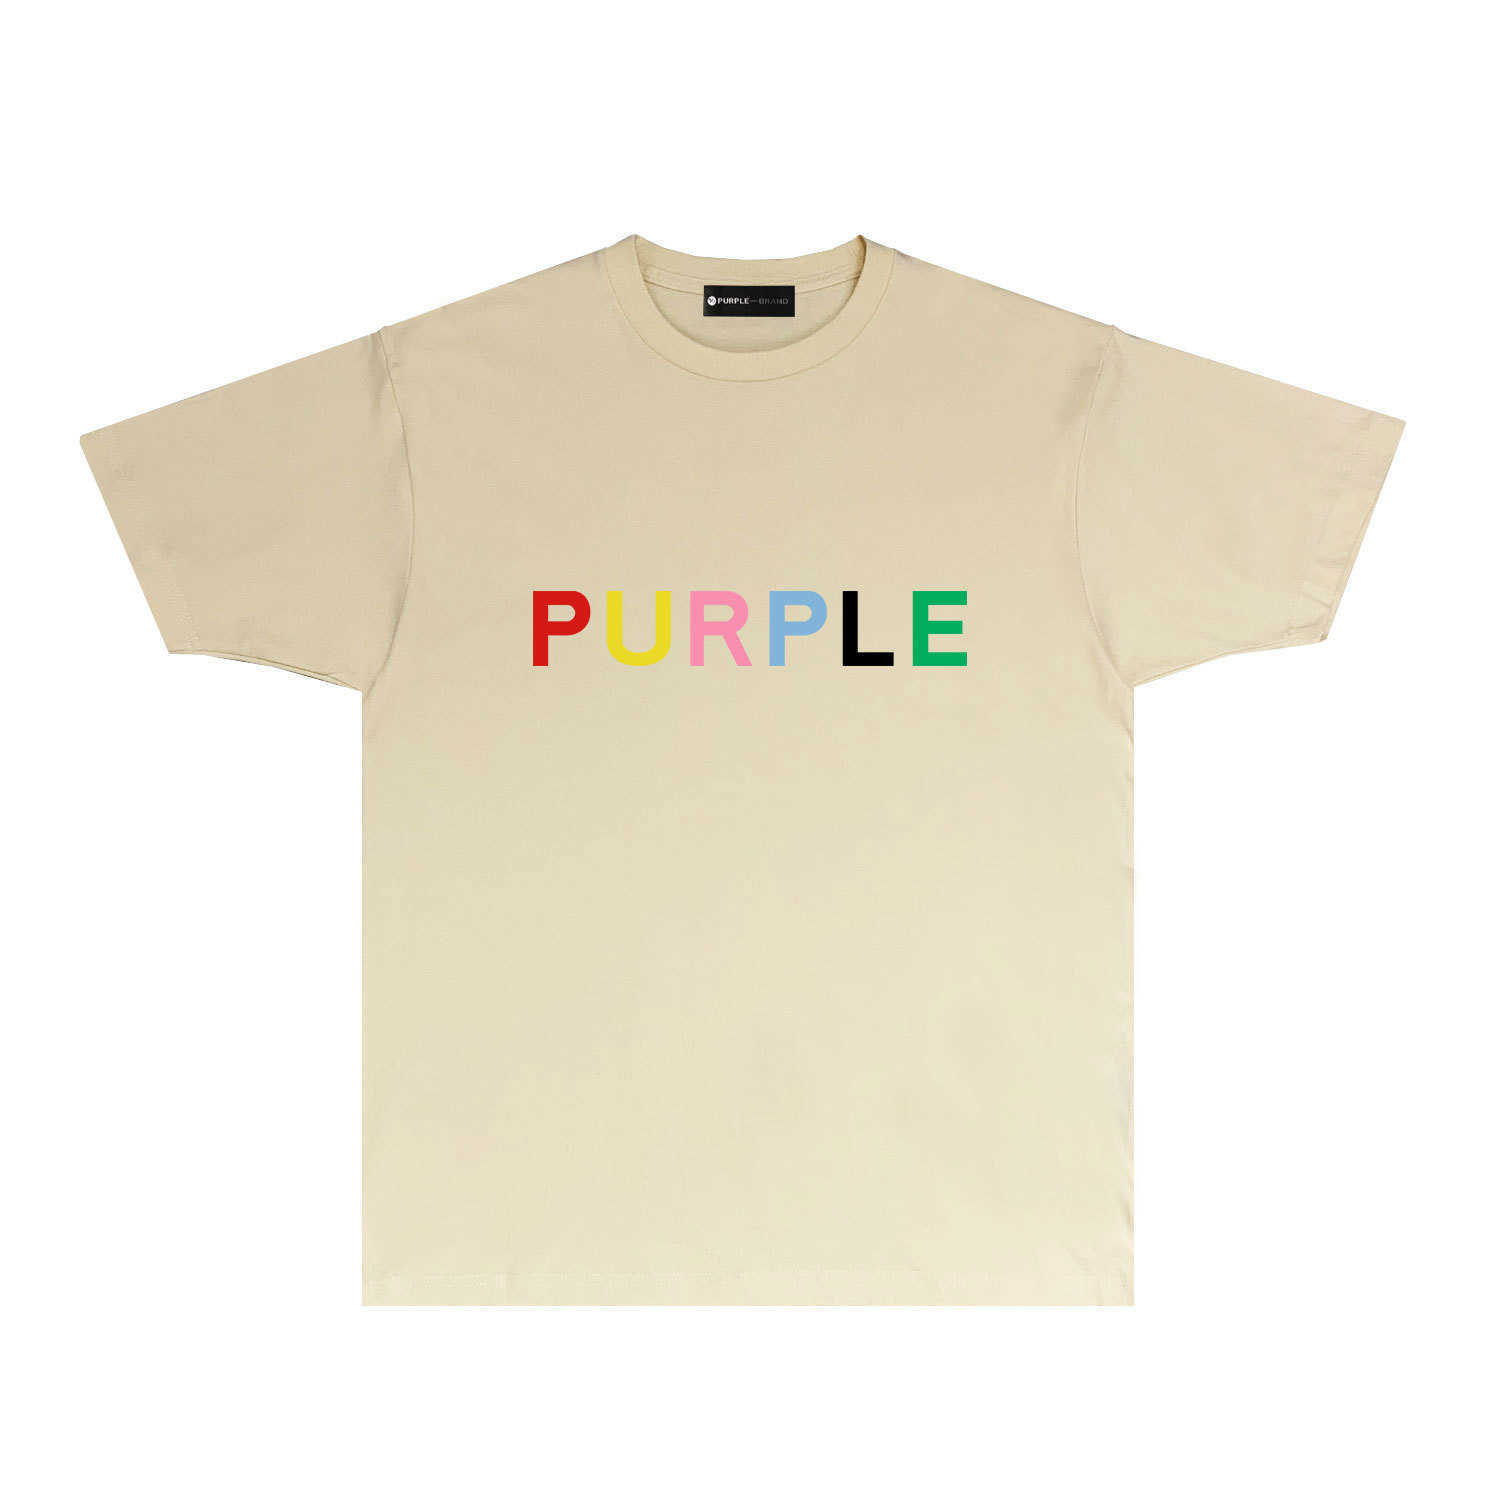 Designerska koszulka męska długoterminowa modna marka Purple Brand T Shirt krótkie rękawowe koszulki